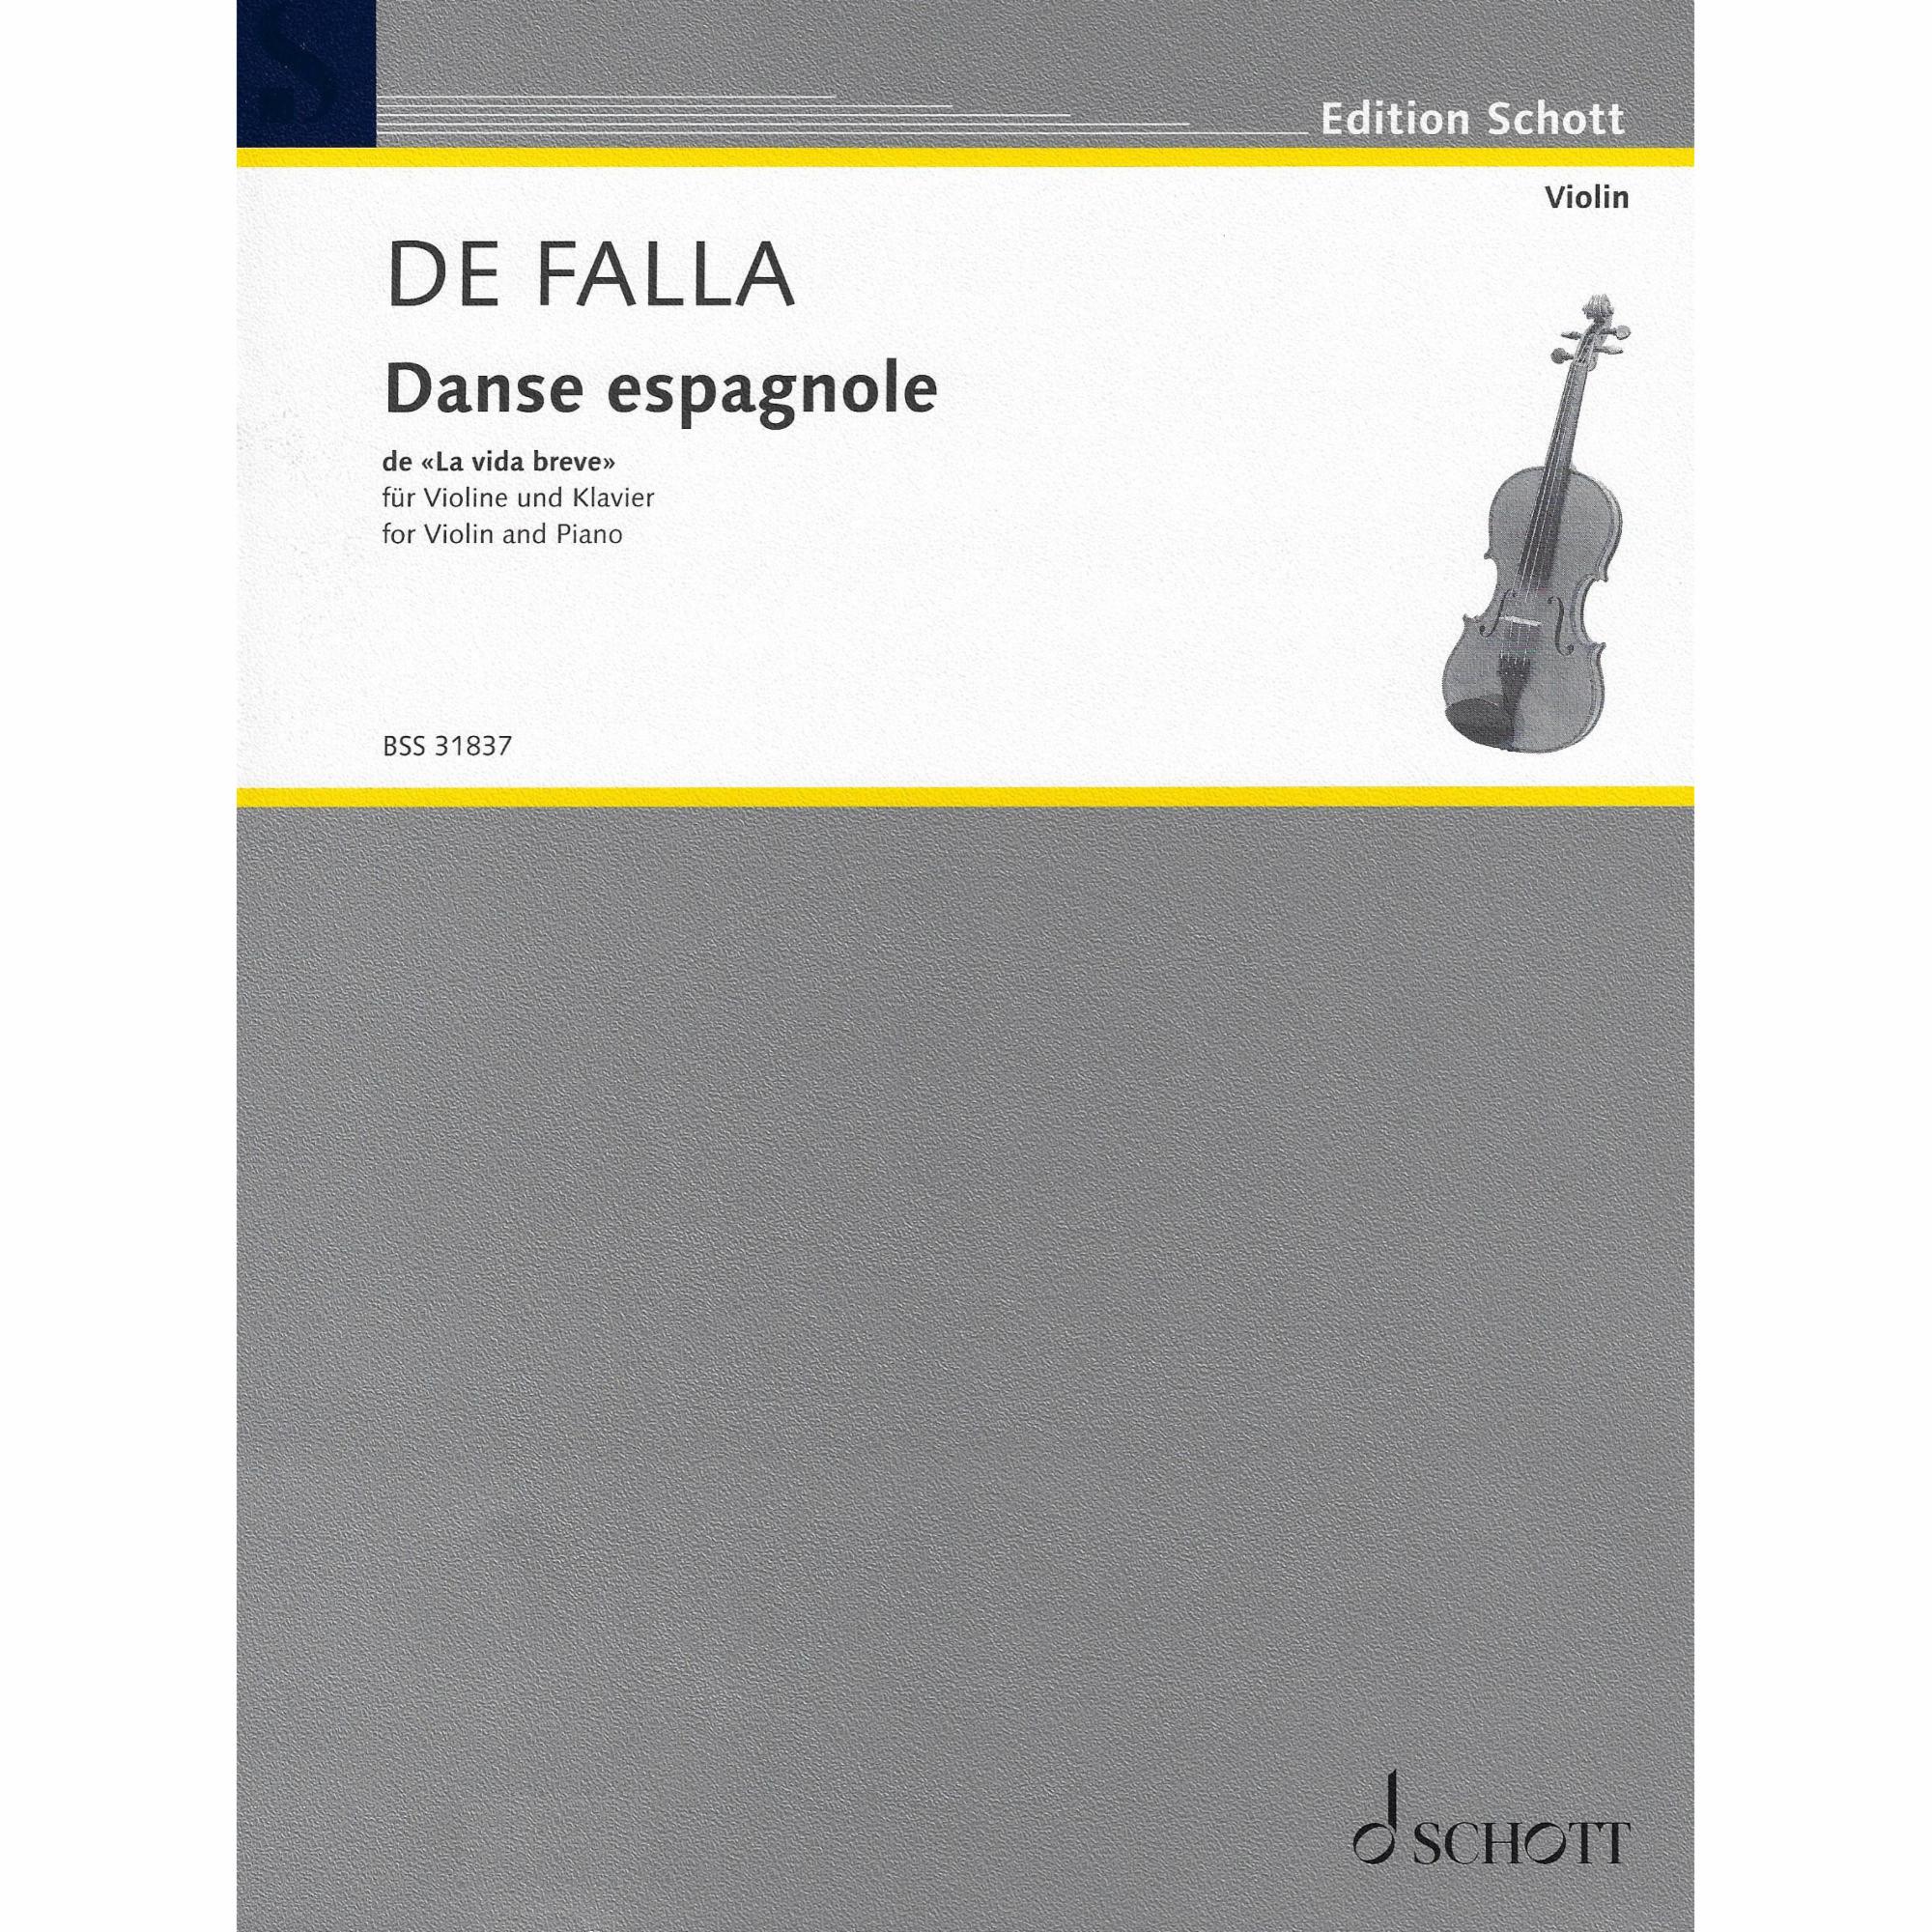 Falla -- Danse espagnole for Violin and Piano